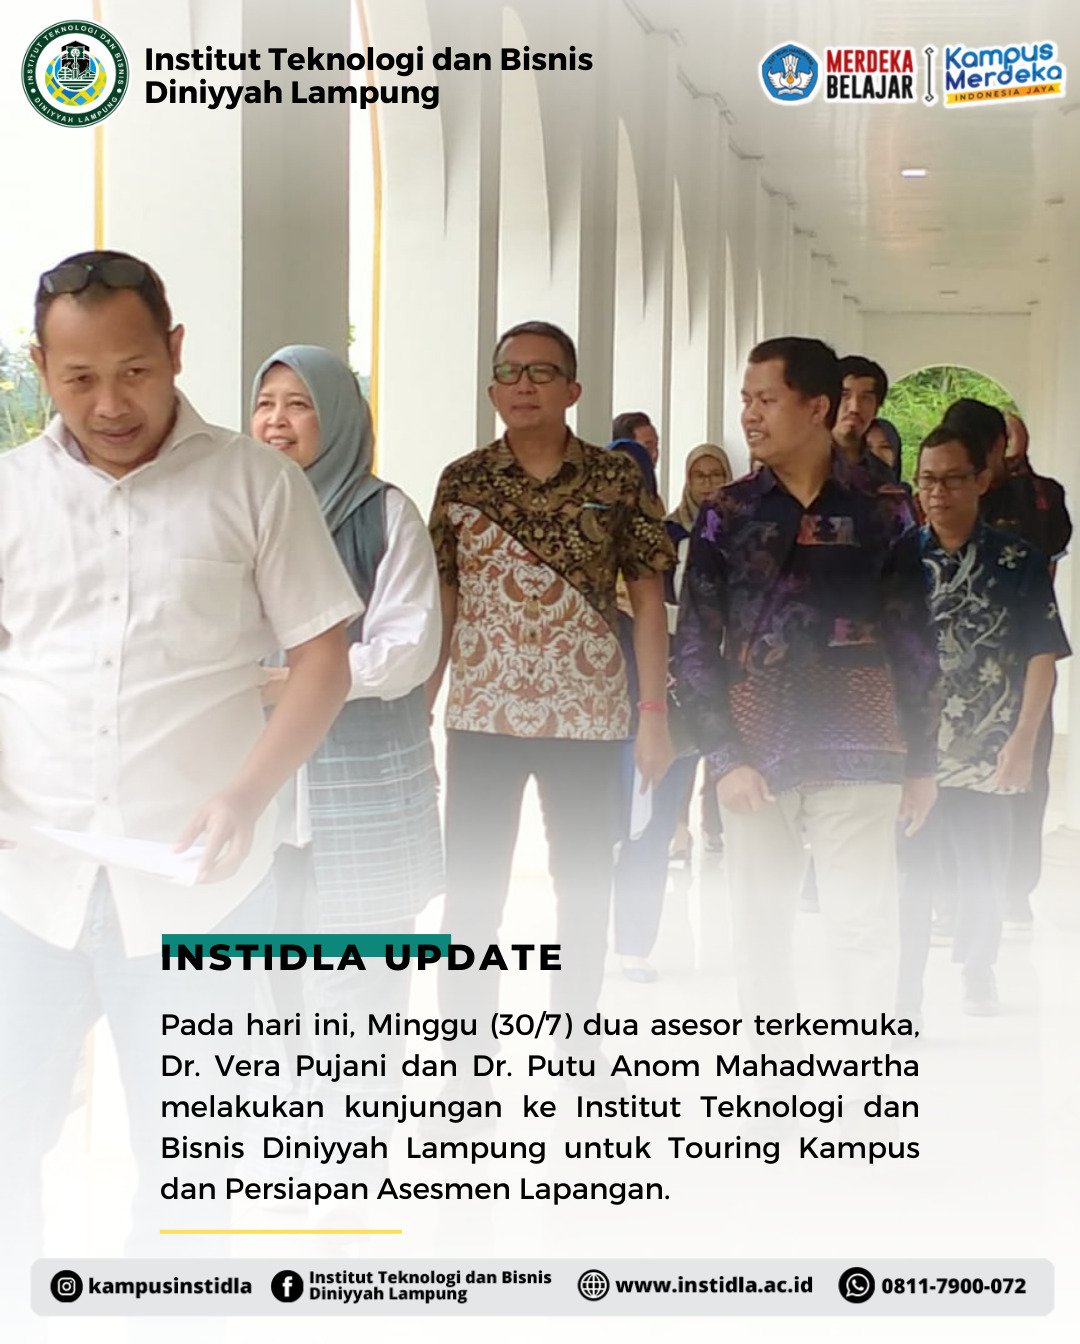 Asesor Berkunjung ke Institut Teknologi dan Bisnis Diniyyah Lampung untuk Touring Kampus dan Persiapan Asesmen Lapangan